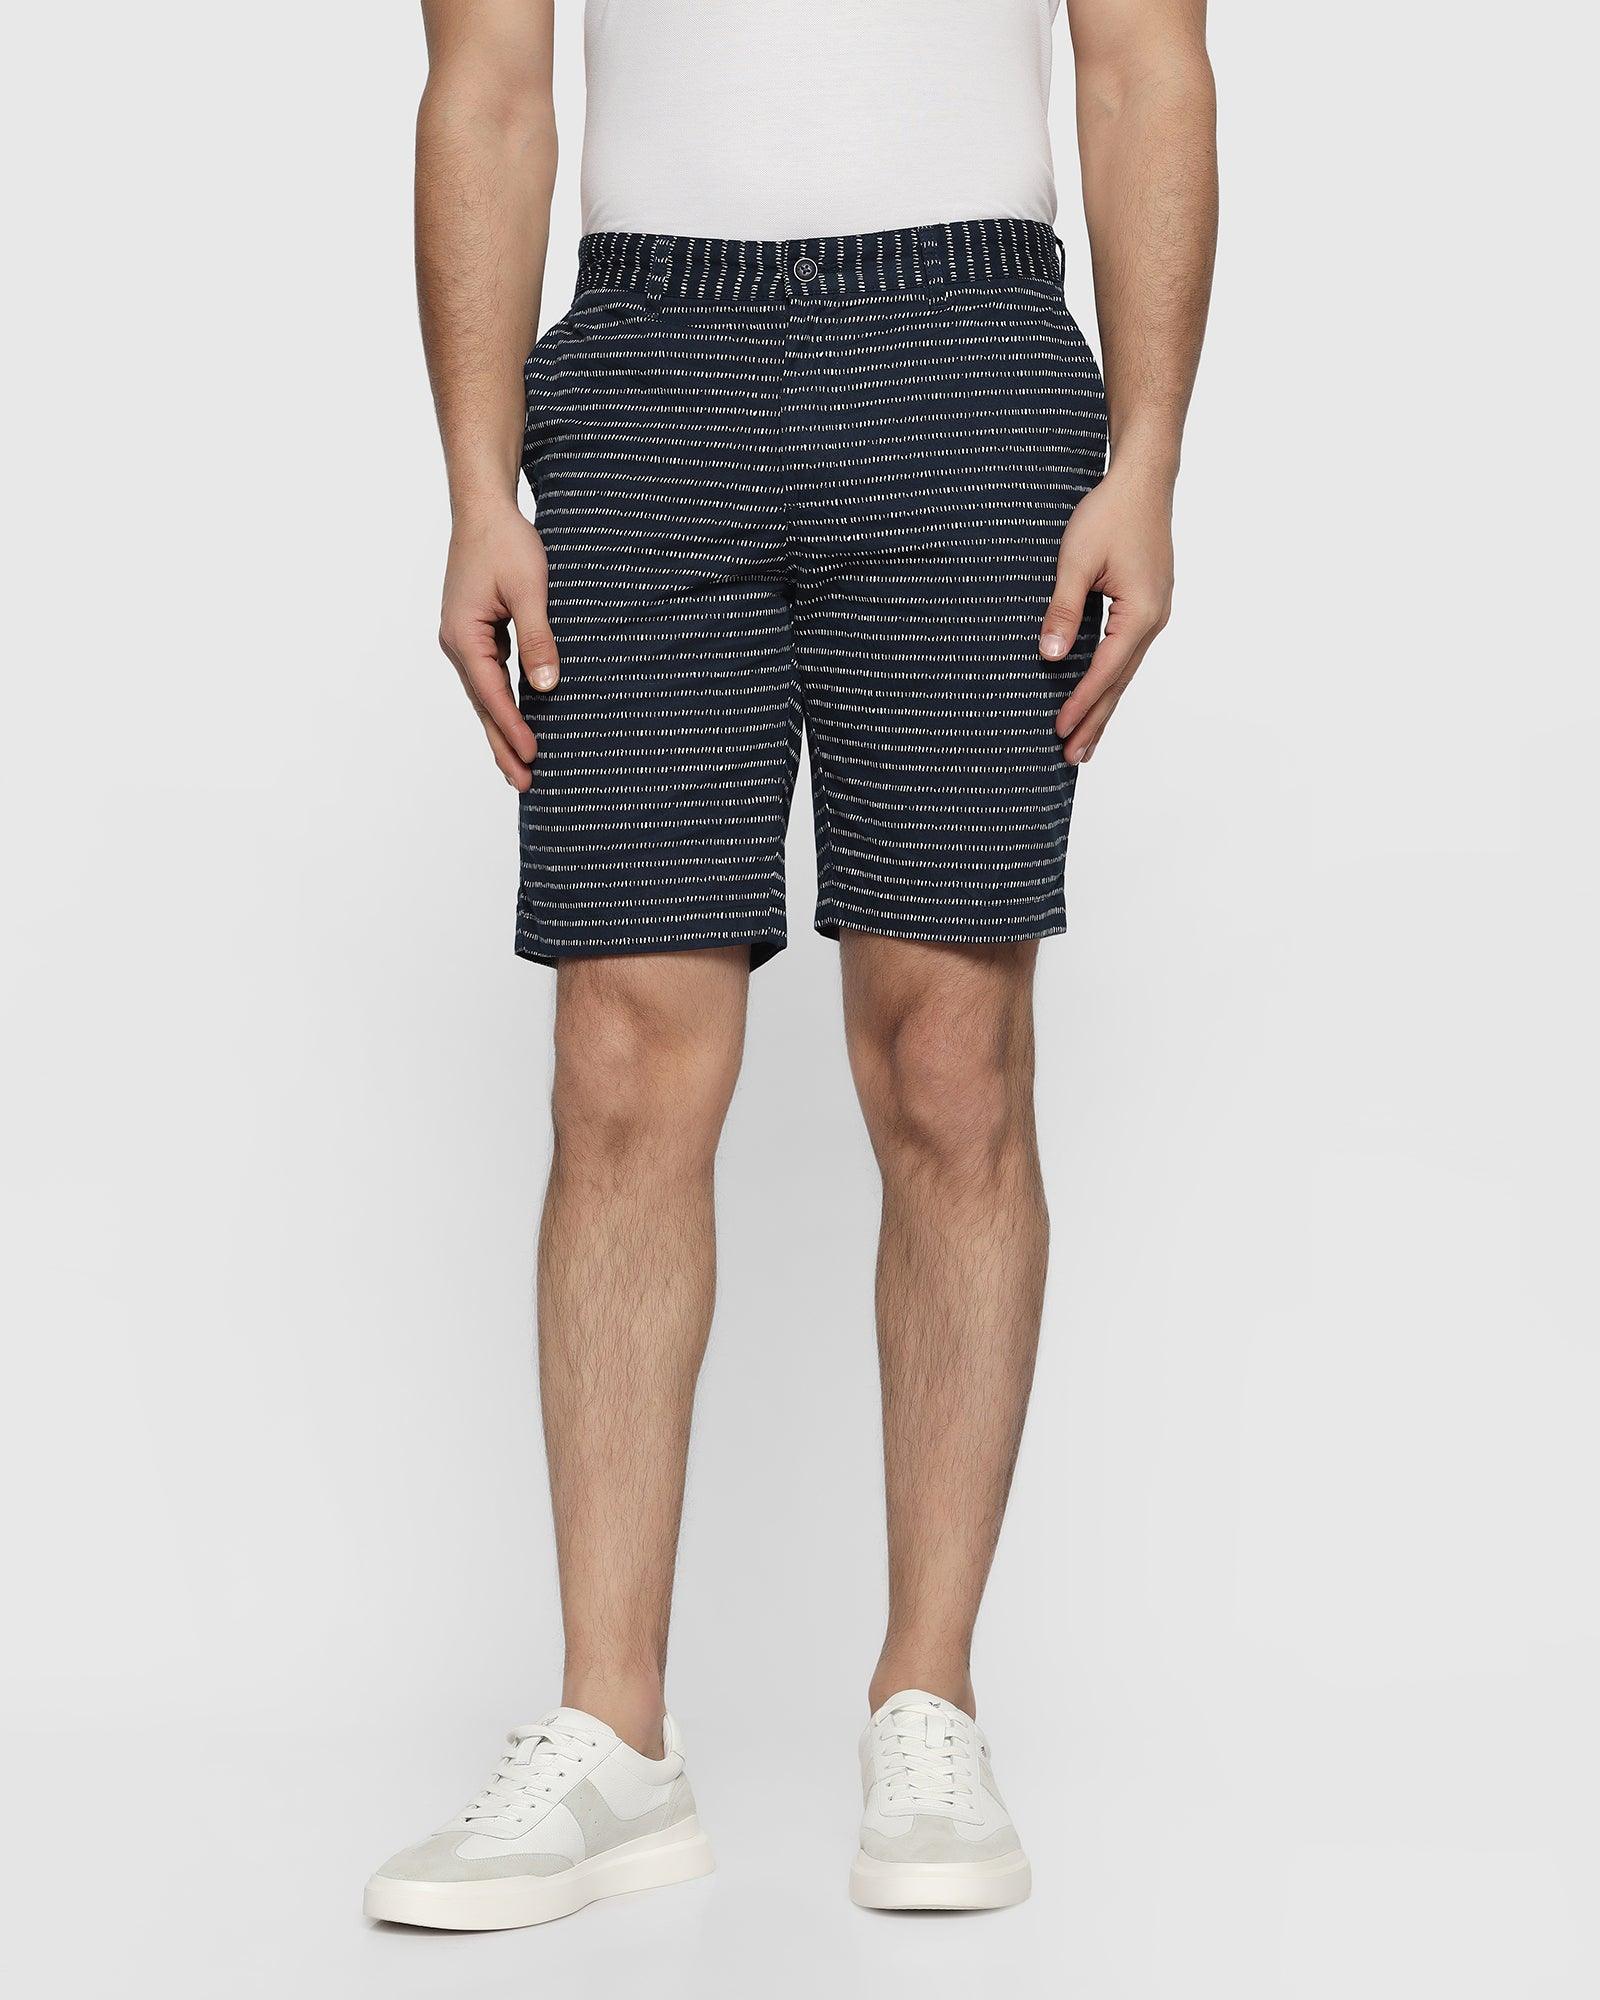 Casual Navy Printed Shorts - Nate